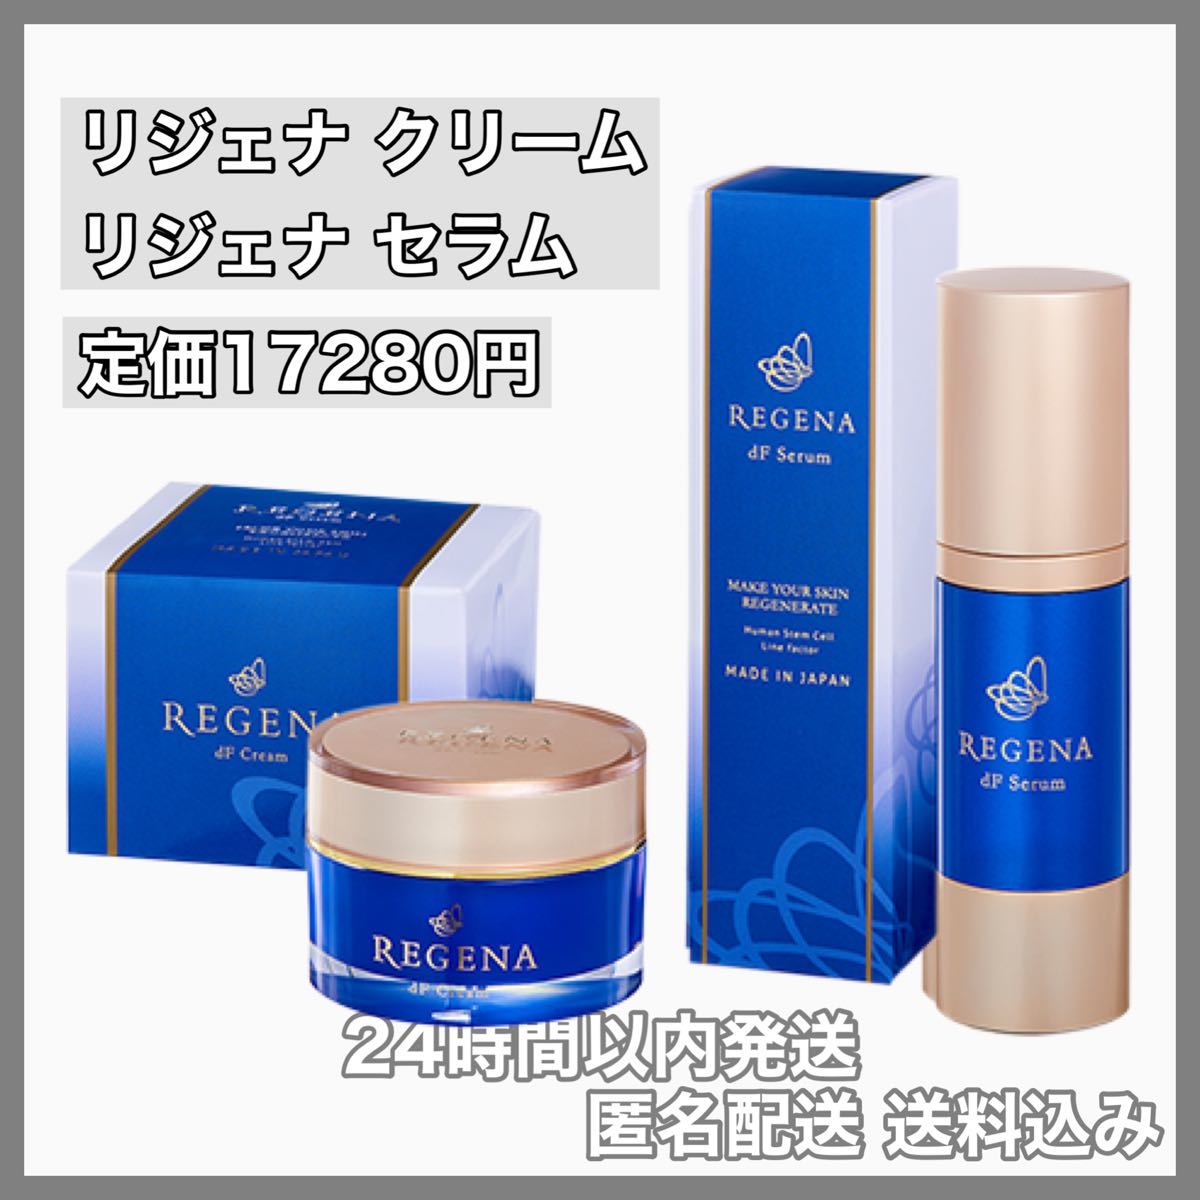 直送商品 ❤️愛用者オススメ❤️ リジェナ エッセンス セラム 美容液 保湿 日本製